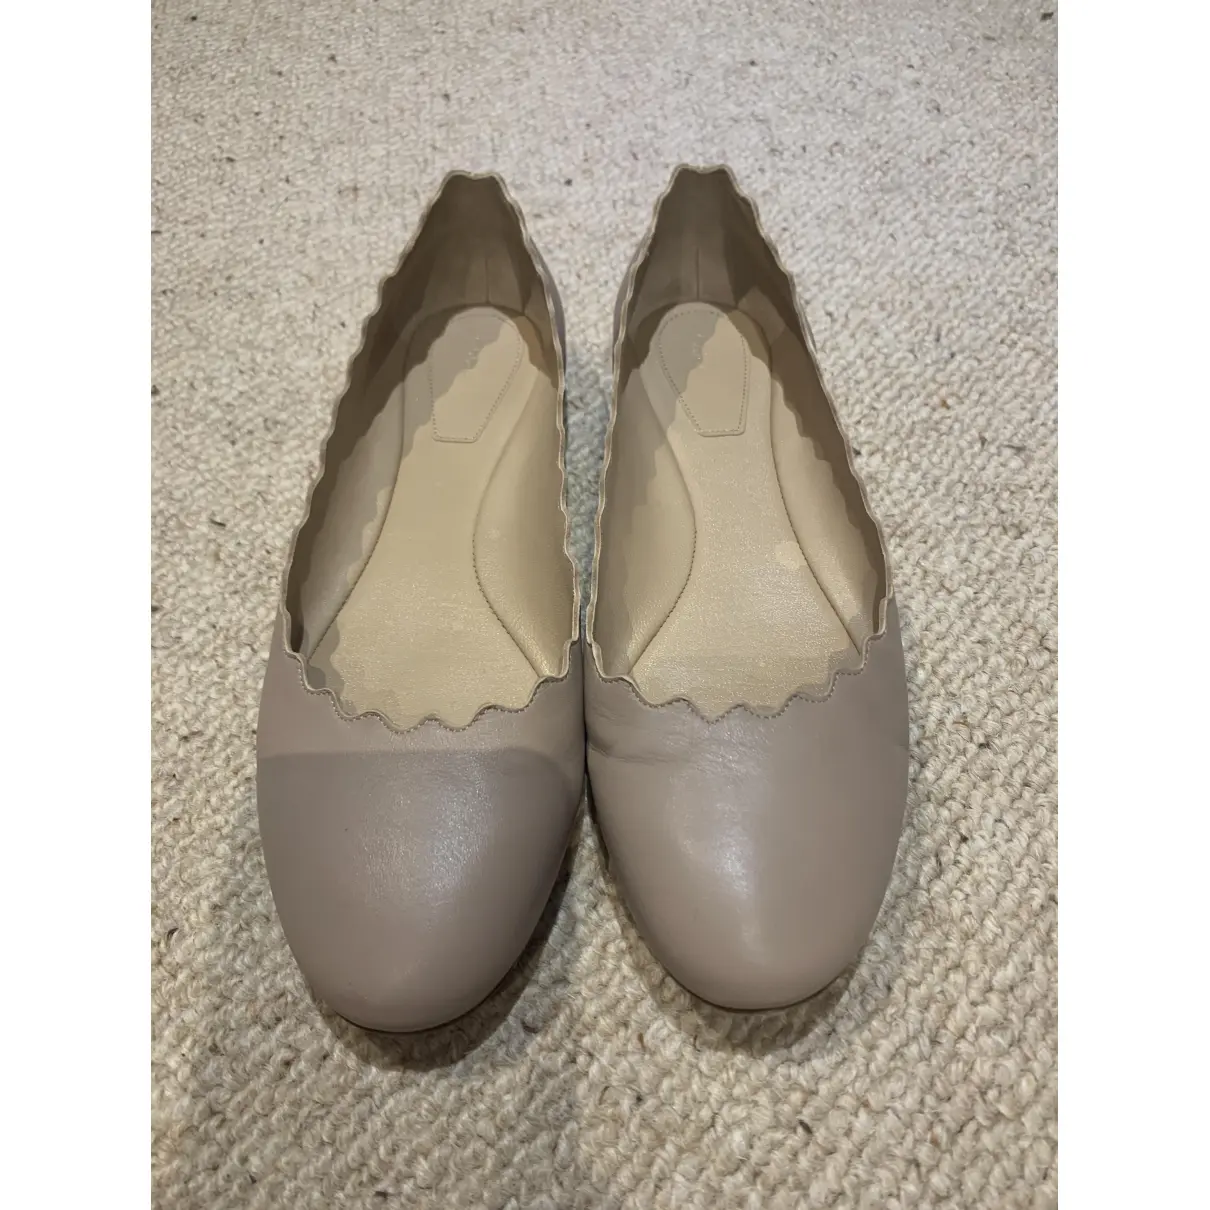 Buy Chloé Lauren leather ballet flats online